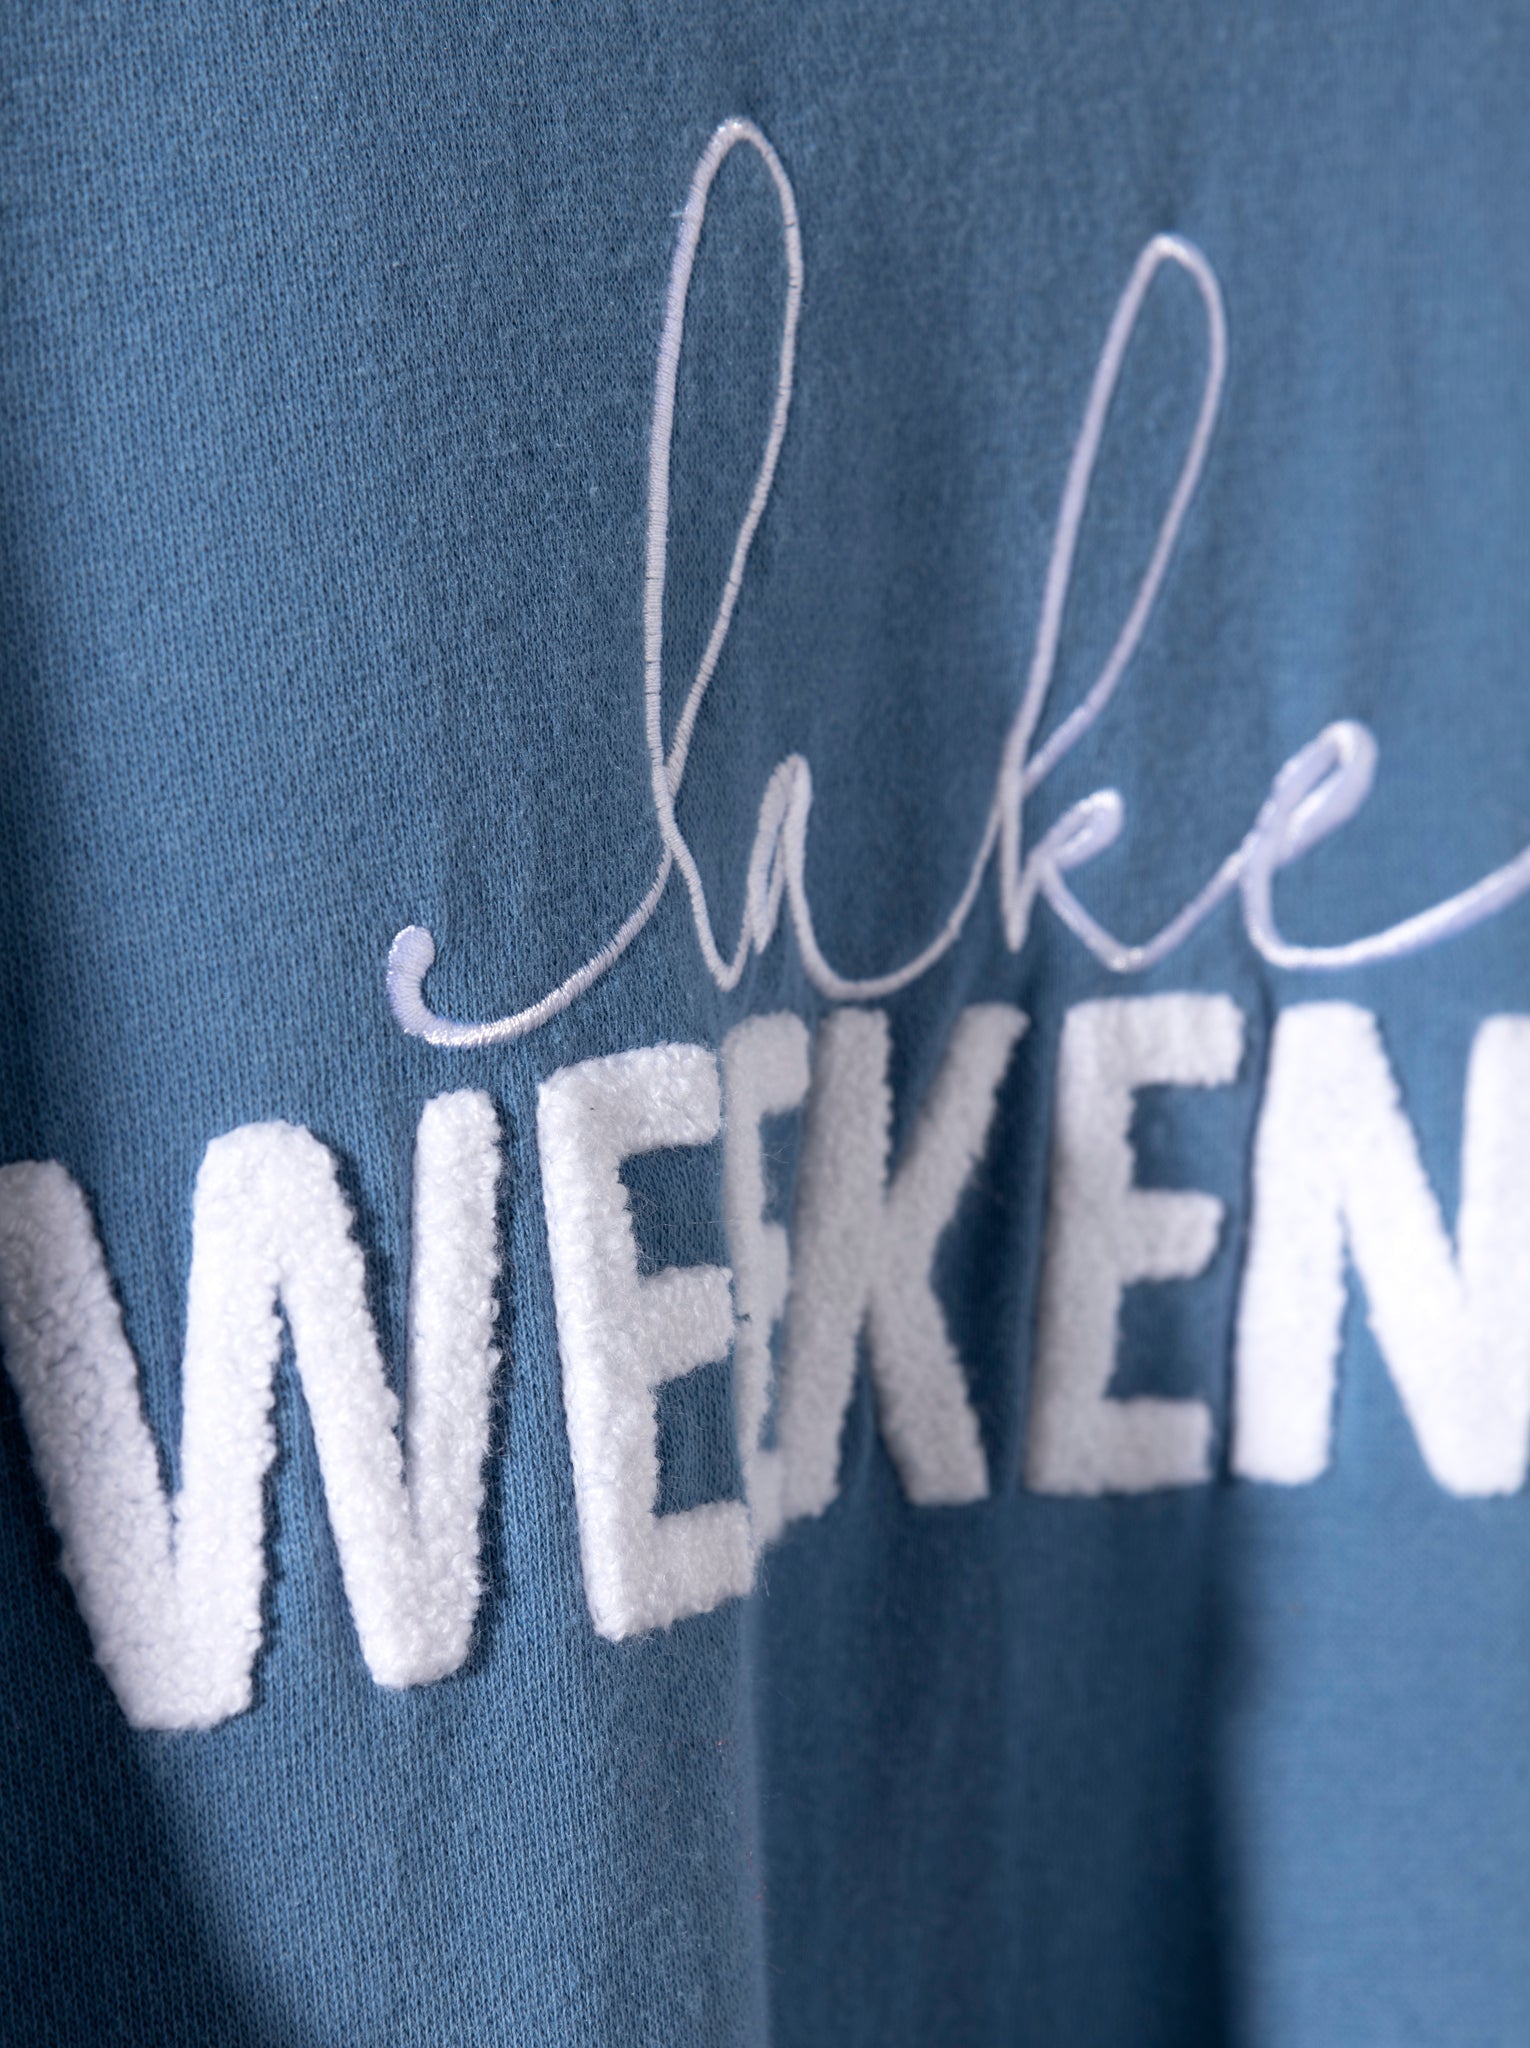 Buy "Lake Weekend" Sweatshirt, Blue by Shiraleah